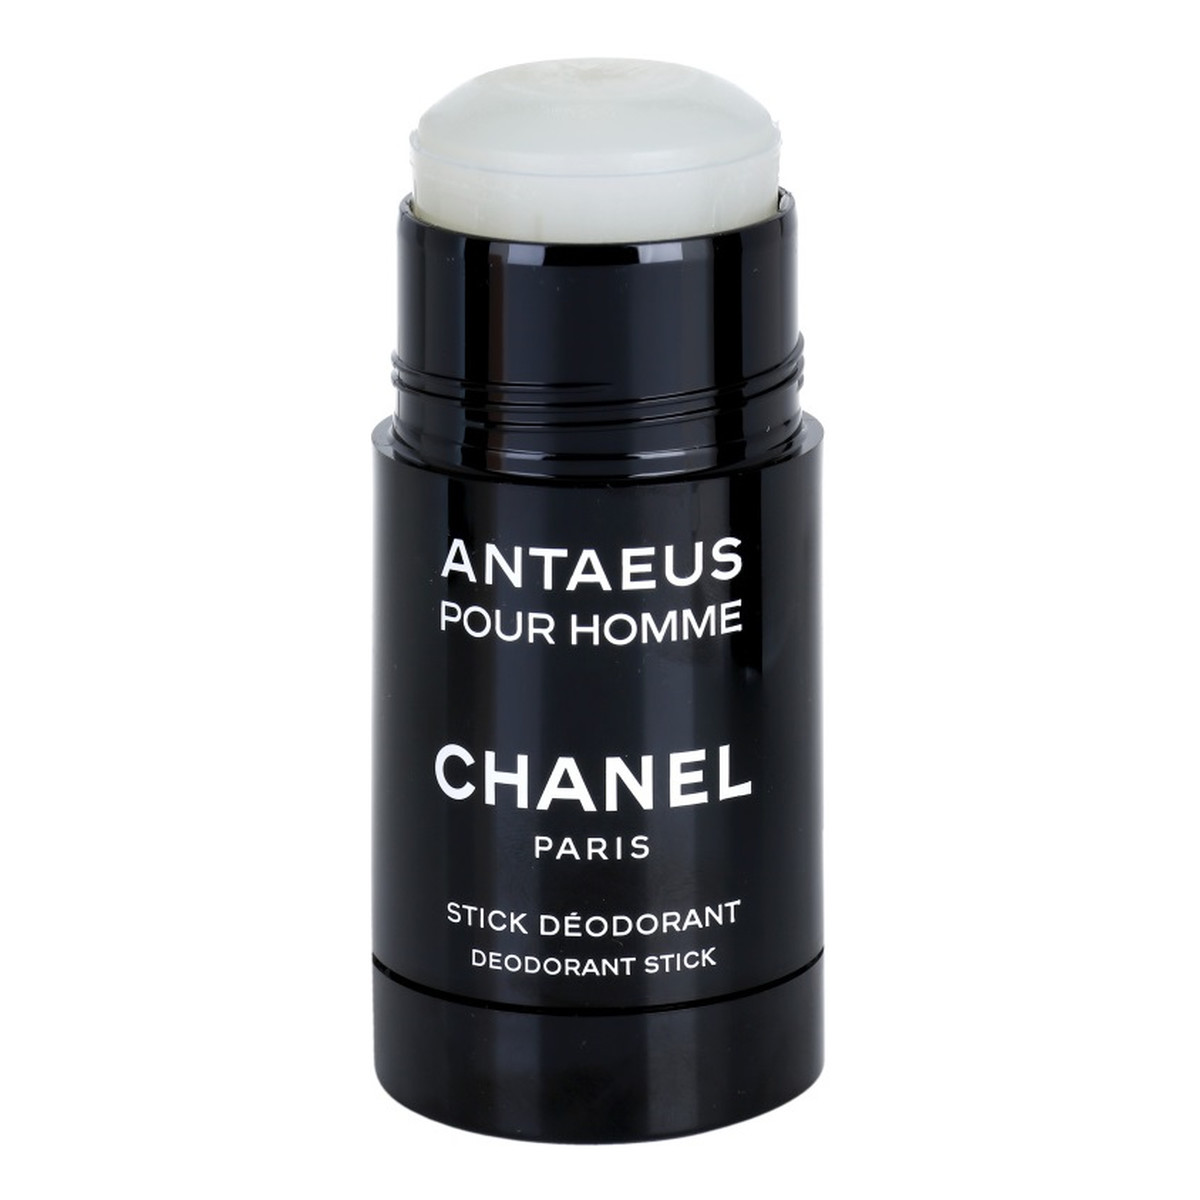 Chanel Antaeus Pour Homme dezodorant sztyft 75ml